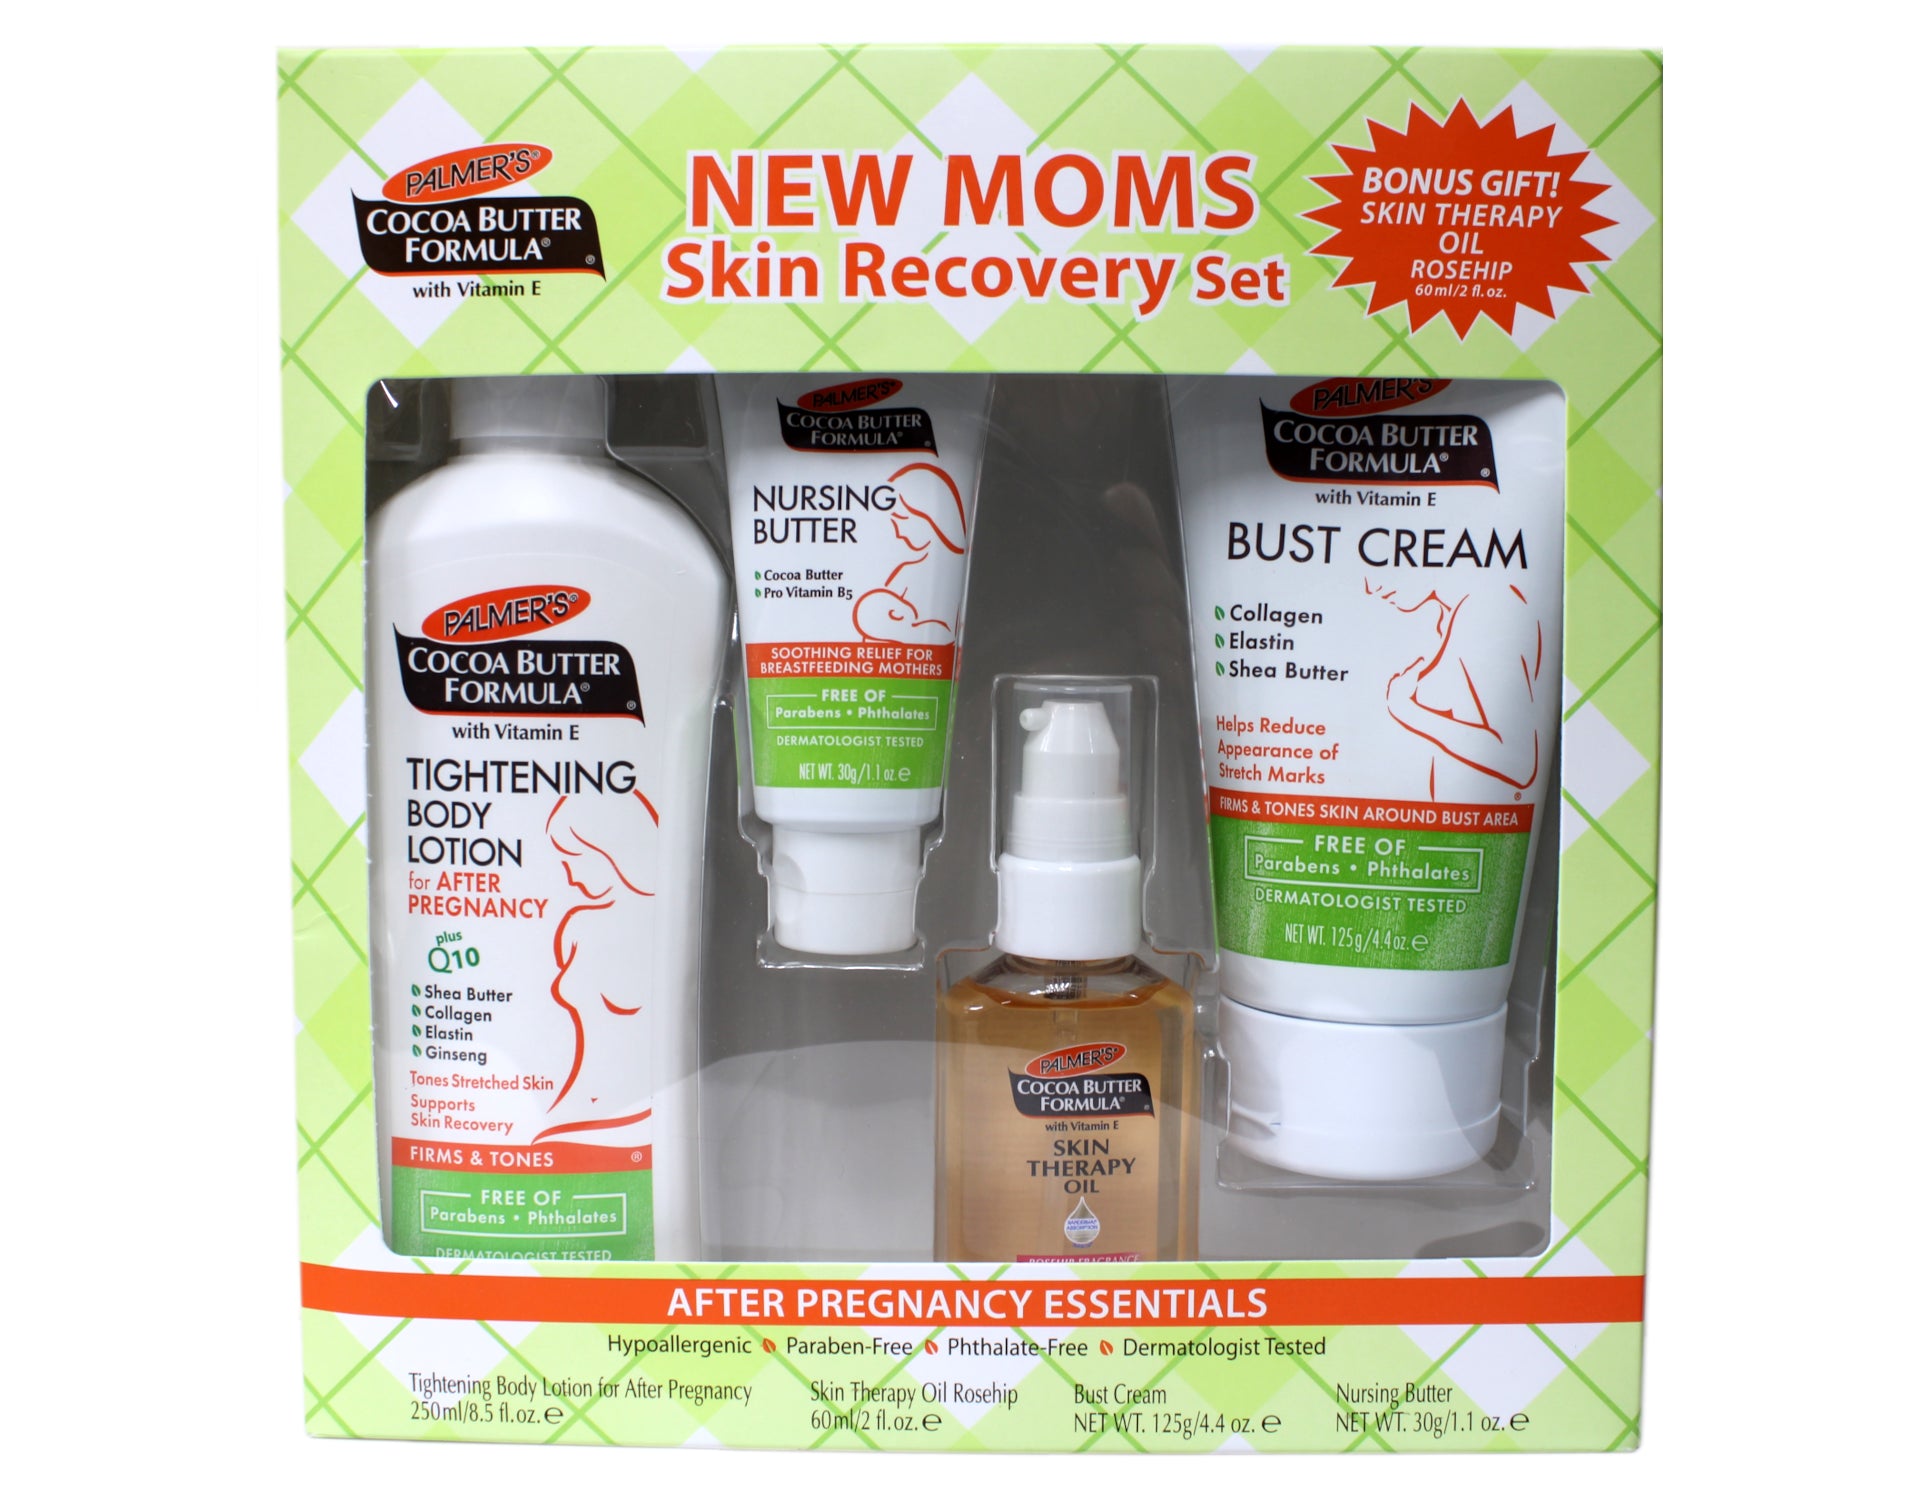 Johnson's Tear-Free Skin Nourish Moisture Baby Soap & Body Wash, Shea &  Cocoa Butter Shower Gel, 16.9 FL OZ 